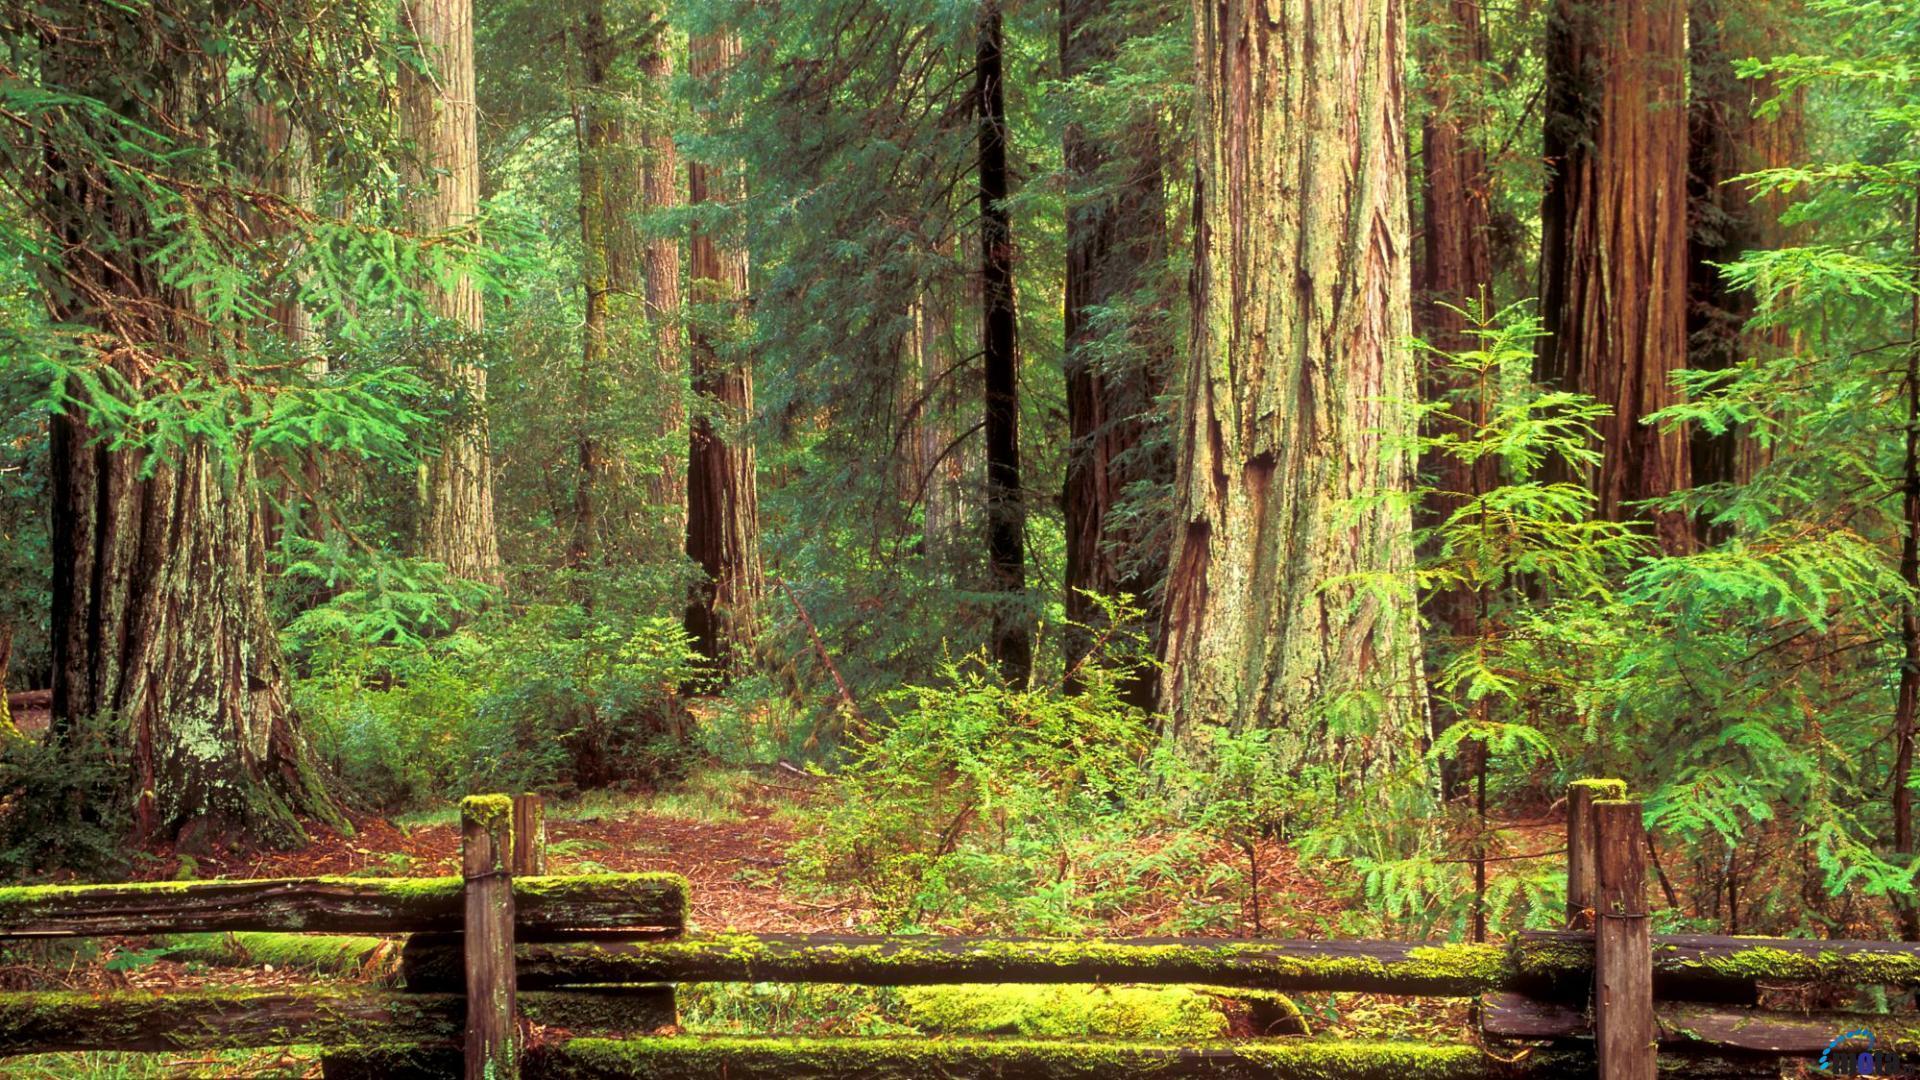 Đừng bỏ lỡ cơ hội tải về miễn phí hình nền Rừng cây Sequoia đỏ với độ phân giải [1920x1080] cho máy tính của bạn. Cảm nhận vẻ đẹp hoang sơ của môi trường tự nhiên, hòa mình vào không gian xanh tươi, thoáng mát và sâu lắng. Hãy cùng thư giãn với một bức hình chất lượng cao như thế này.